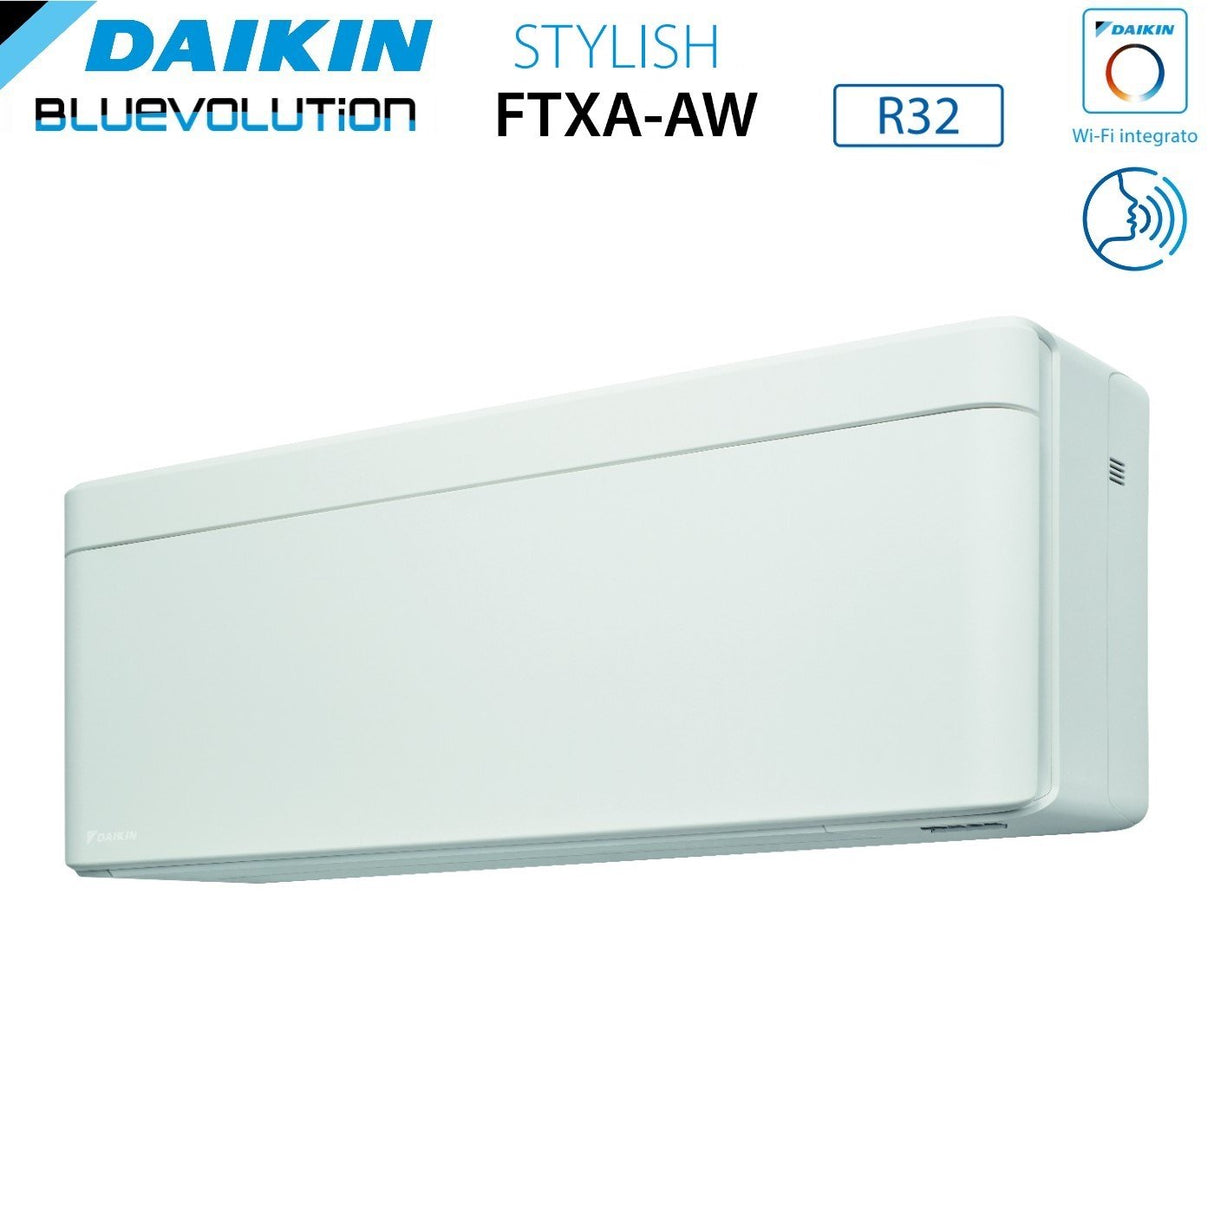 immagine-3-daikin-climatizzatore-condizionatore-daikin-bluevolution-dual-split-inverter-serie-stylish-white-912-con-2mxm50a-r-32-wi-fi-integrato-900012000-colore-bianco-garanzia-italiana-ean-8059657008886